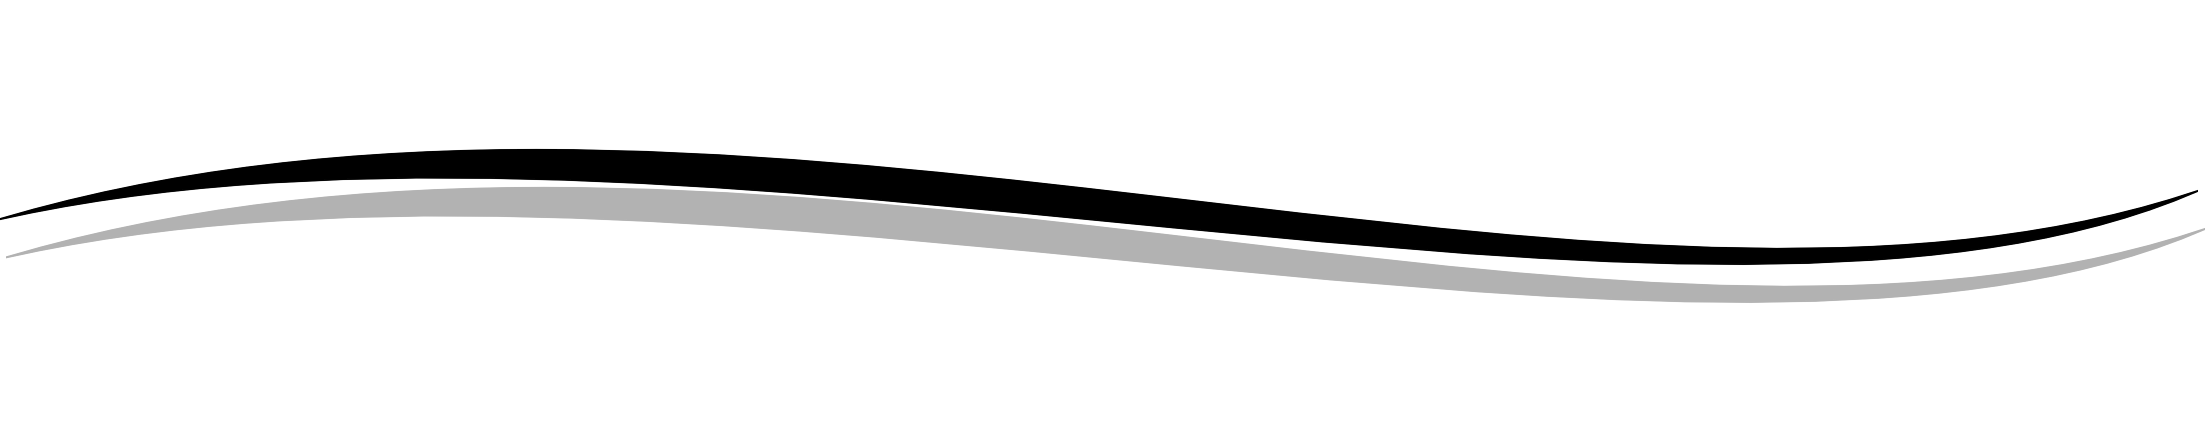 Black Line Divider Clipart